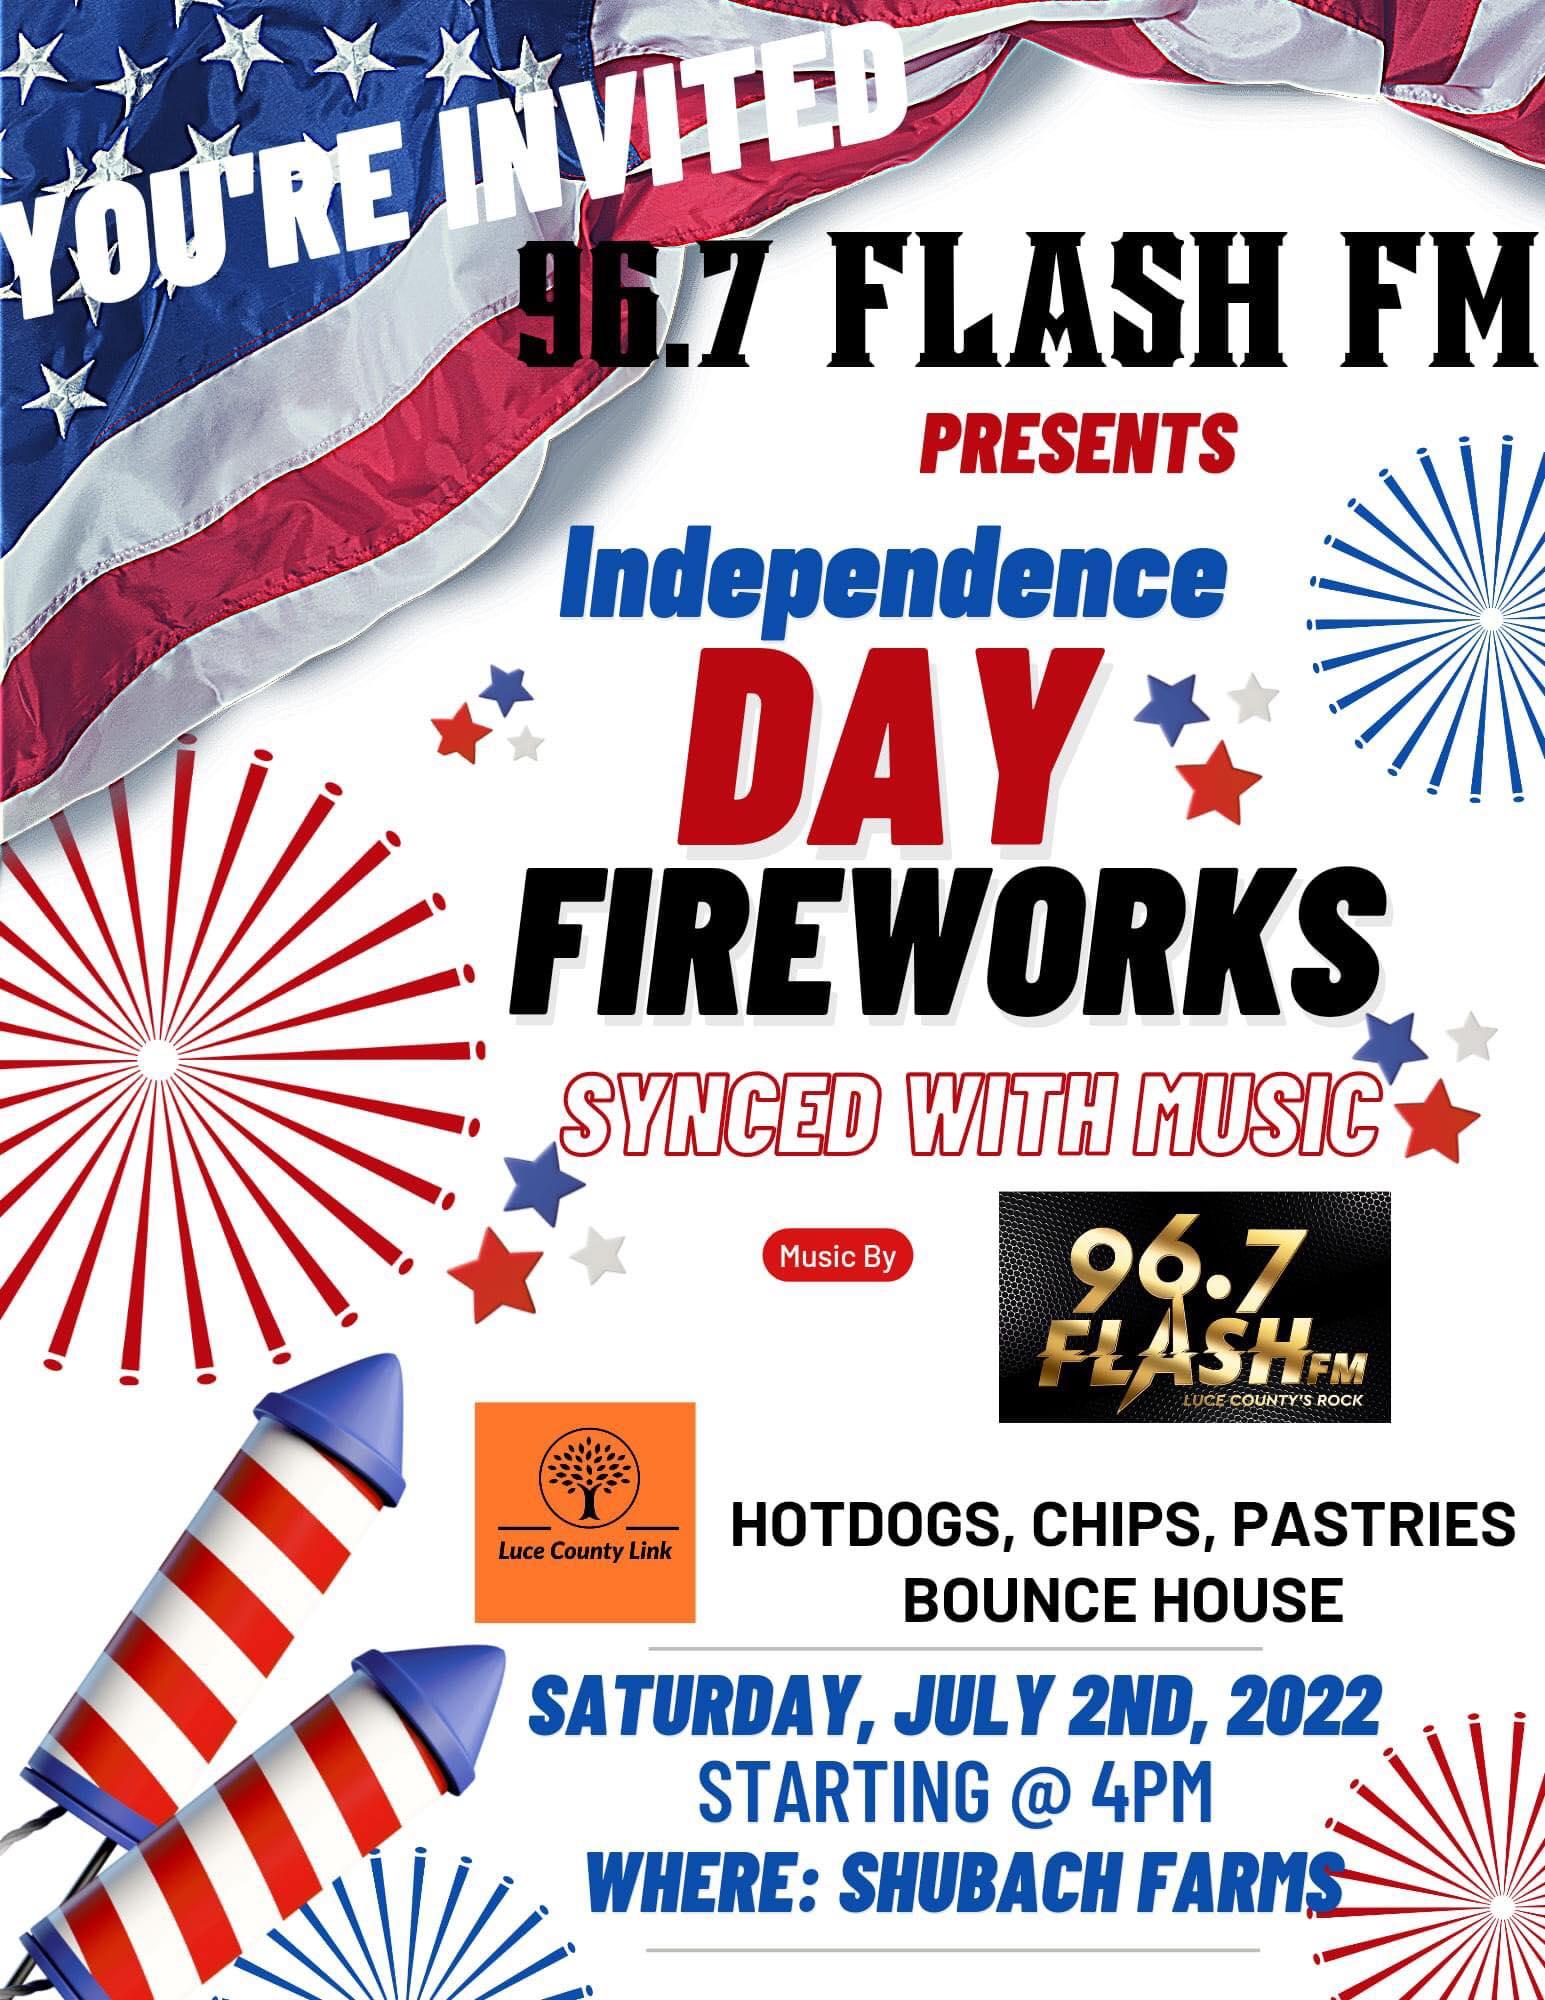 96.7 Flash FM: Fireworks Event Poster